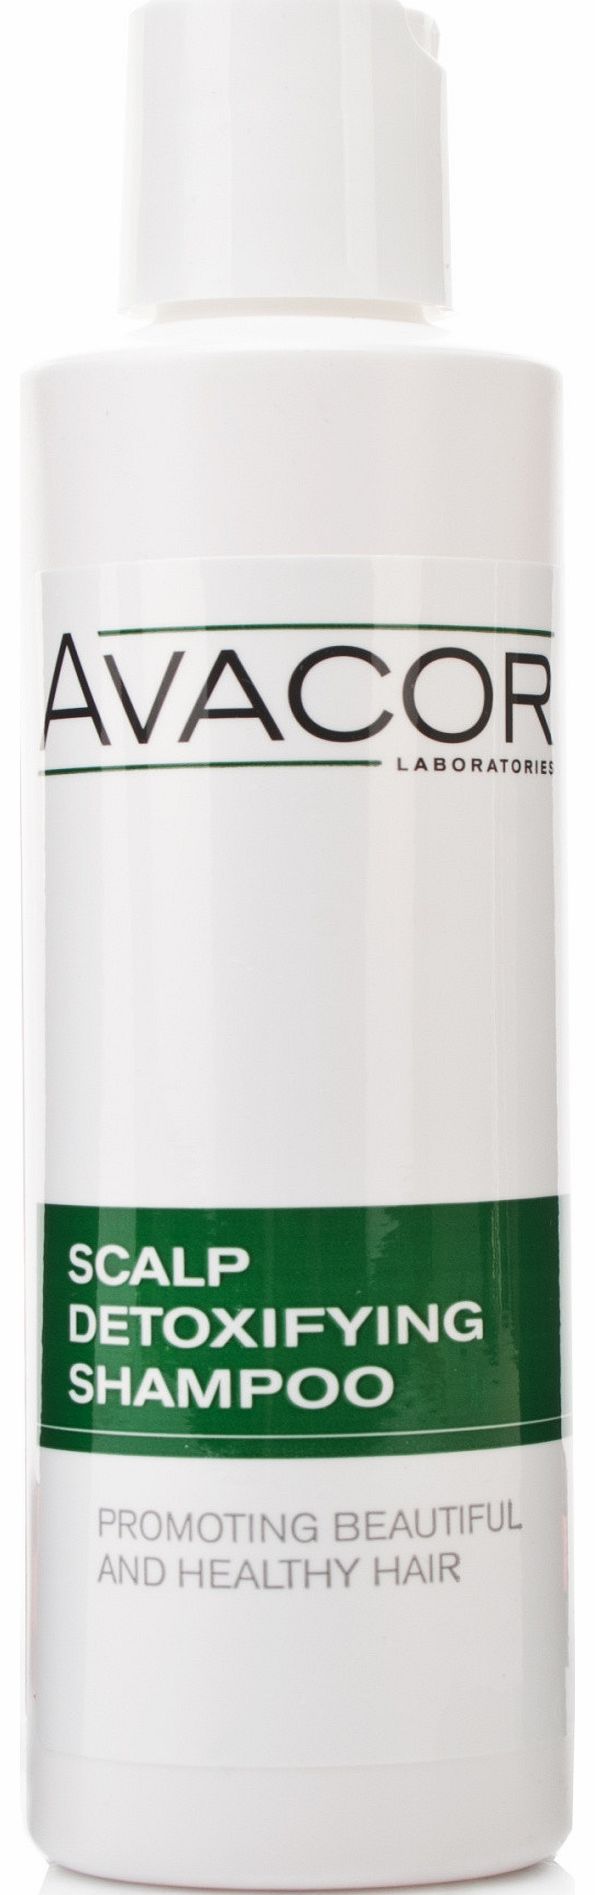 Avacor Scalp Detoxifying Shampoo